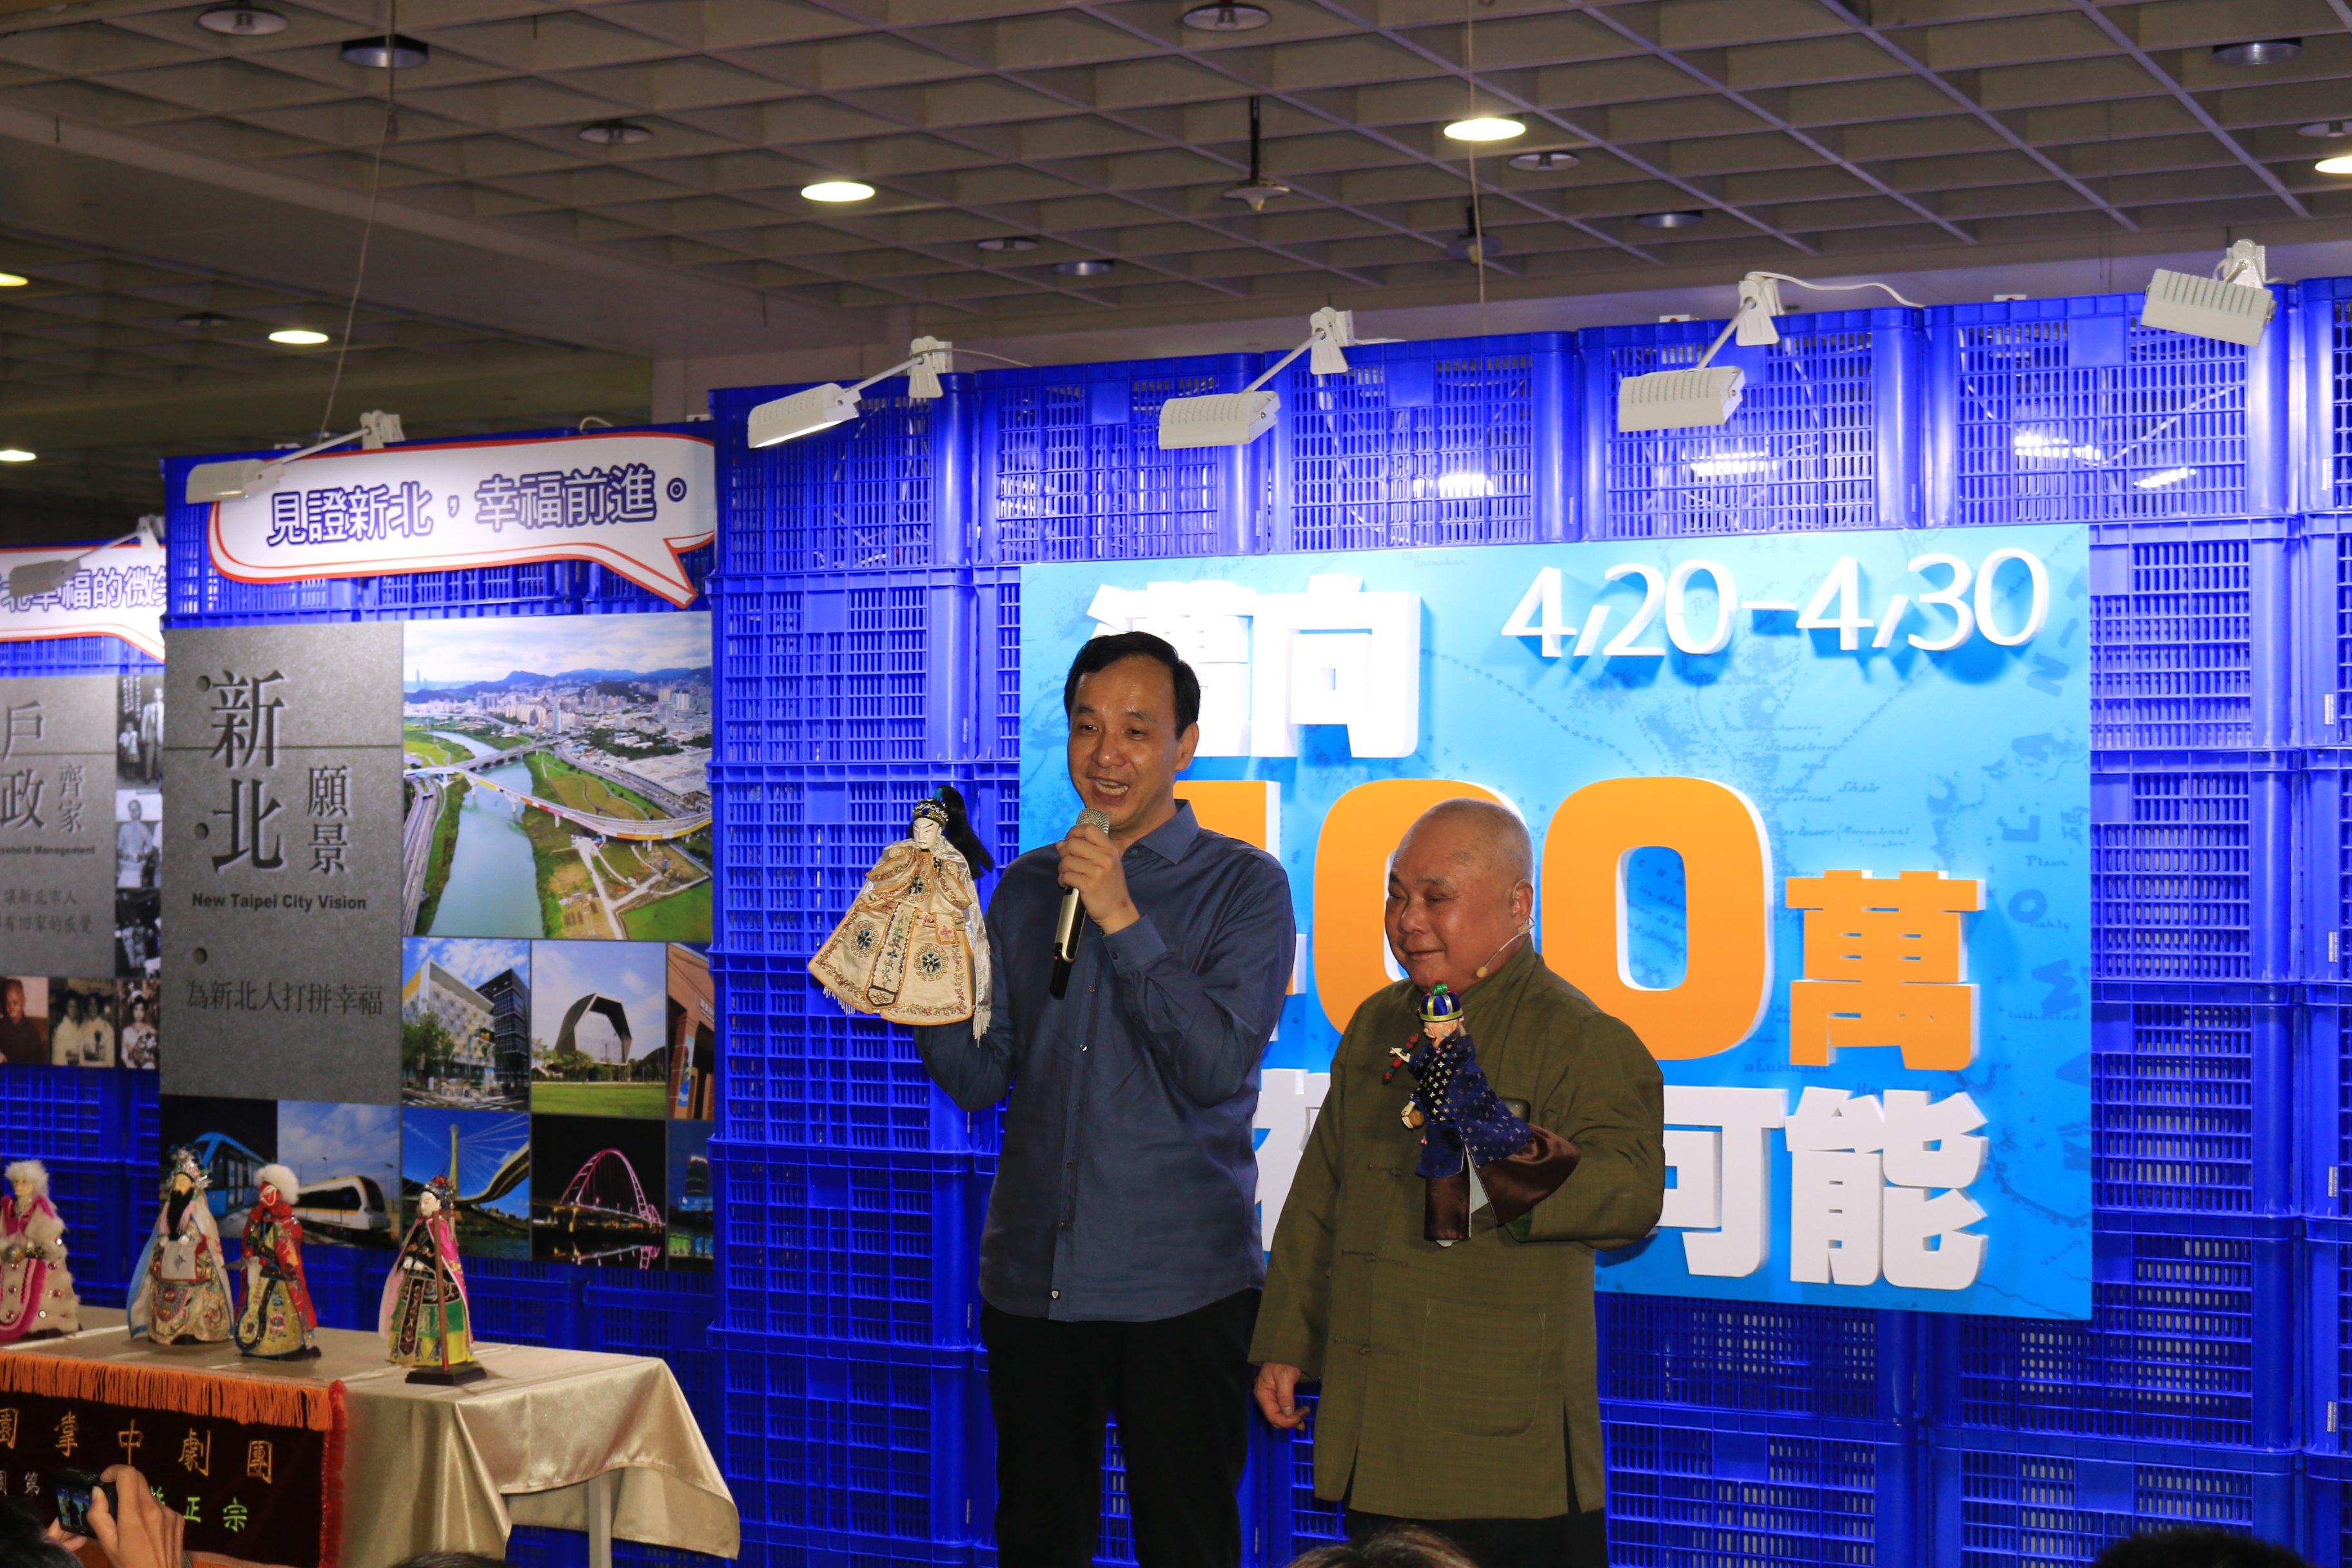 「新北戶政展」，今（20）日在板橋火車站B1展出，由新莊在地百年歷史的小西園布袋戲第三代-新西園布袋戲偶（右穿綠衣者）與朱立倫市長（左穿藍衣服者）互動熱鬧揭幕